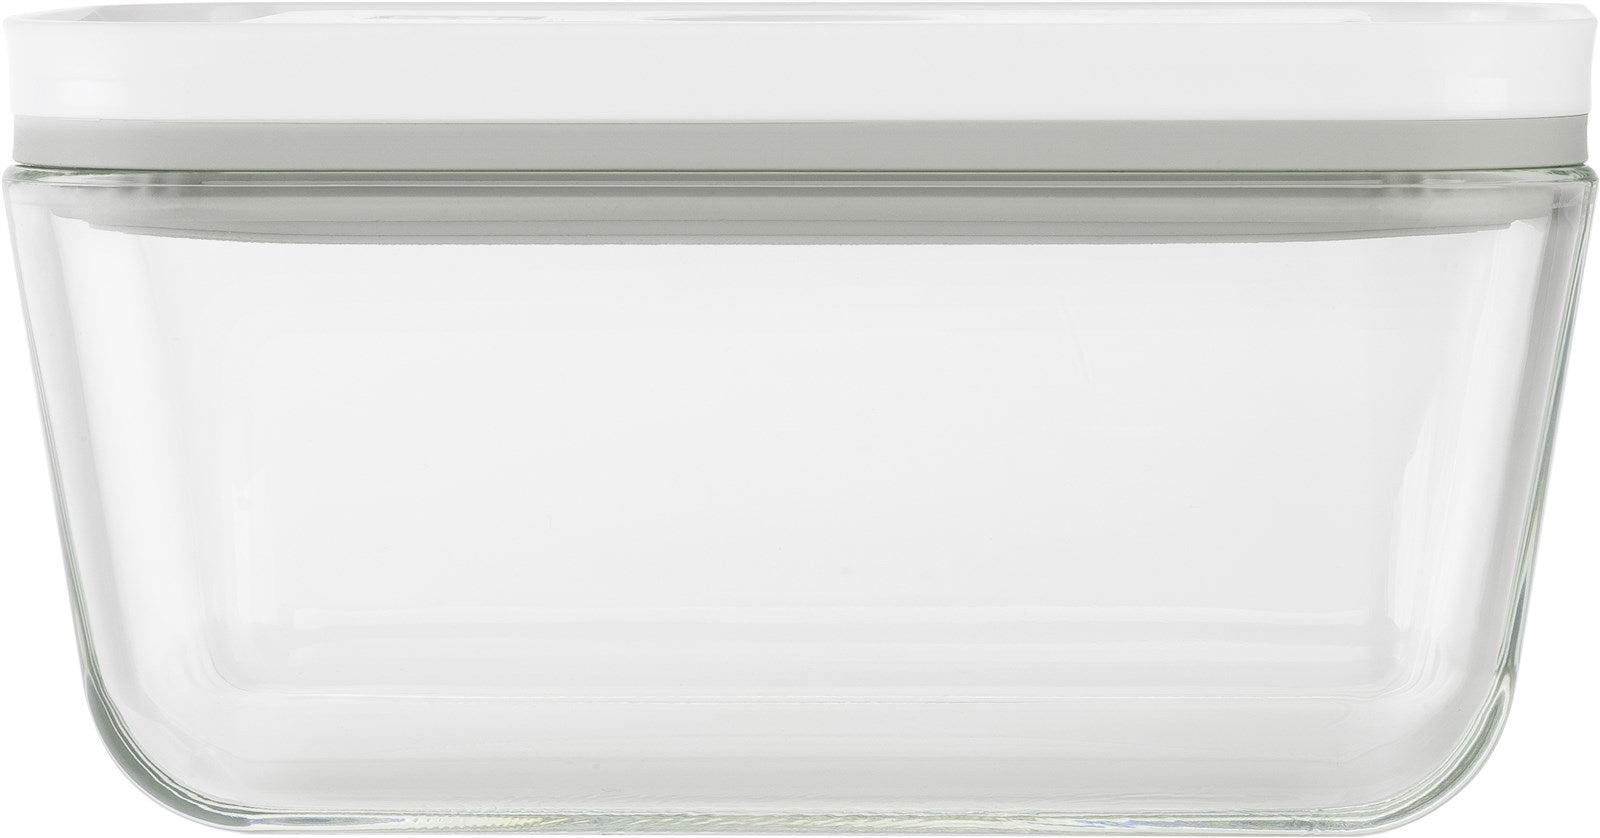 Vakuumbox M, Glas, 18.2x11.2x9.8 cm - 0.9L - KAQTU Design